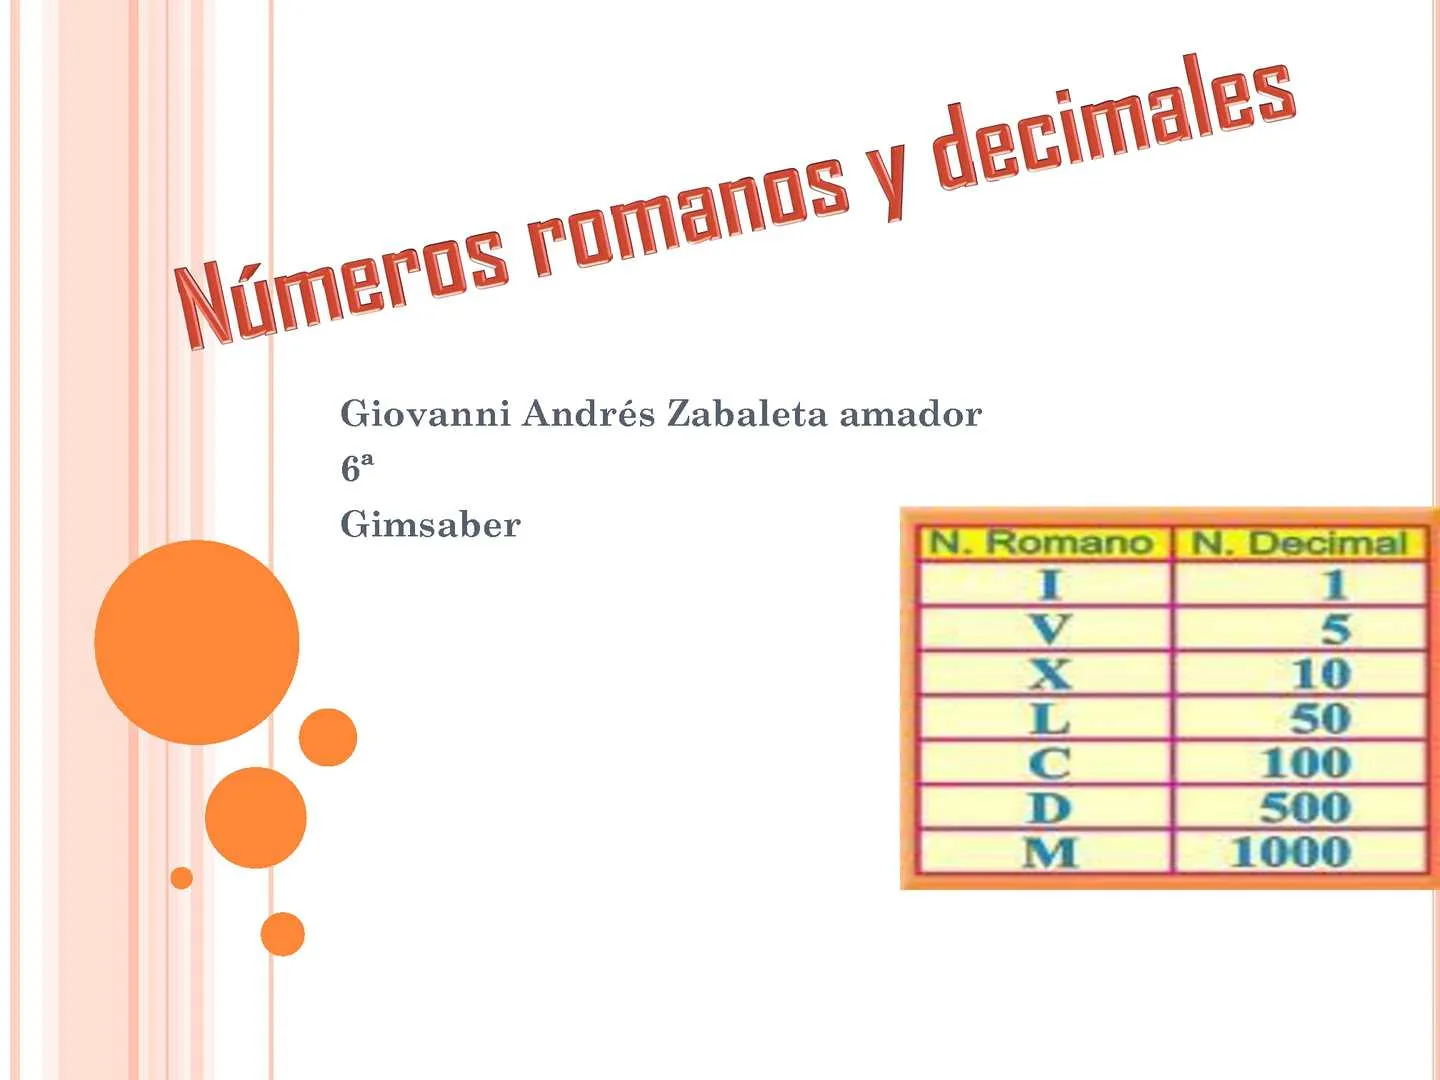 Calaméo - trabajo de matematicas sobre los numeros romanos y decimales